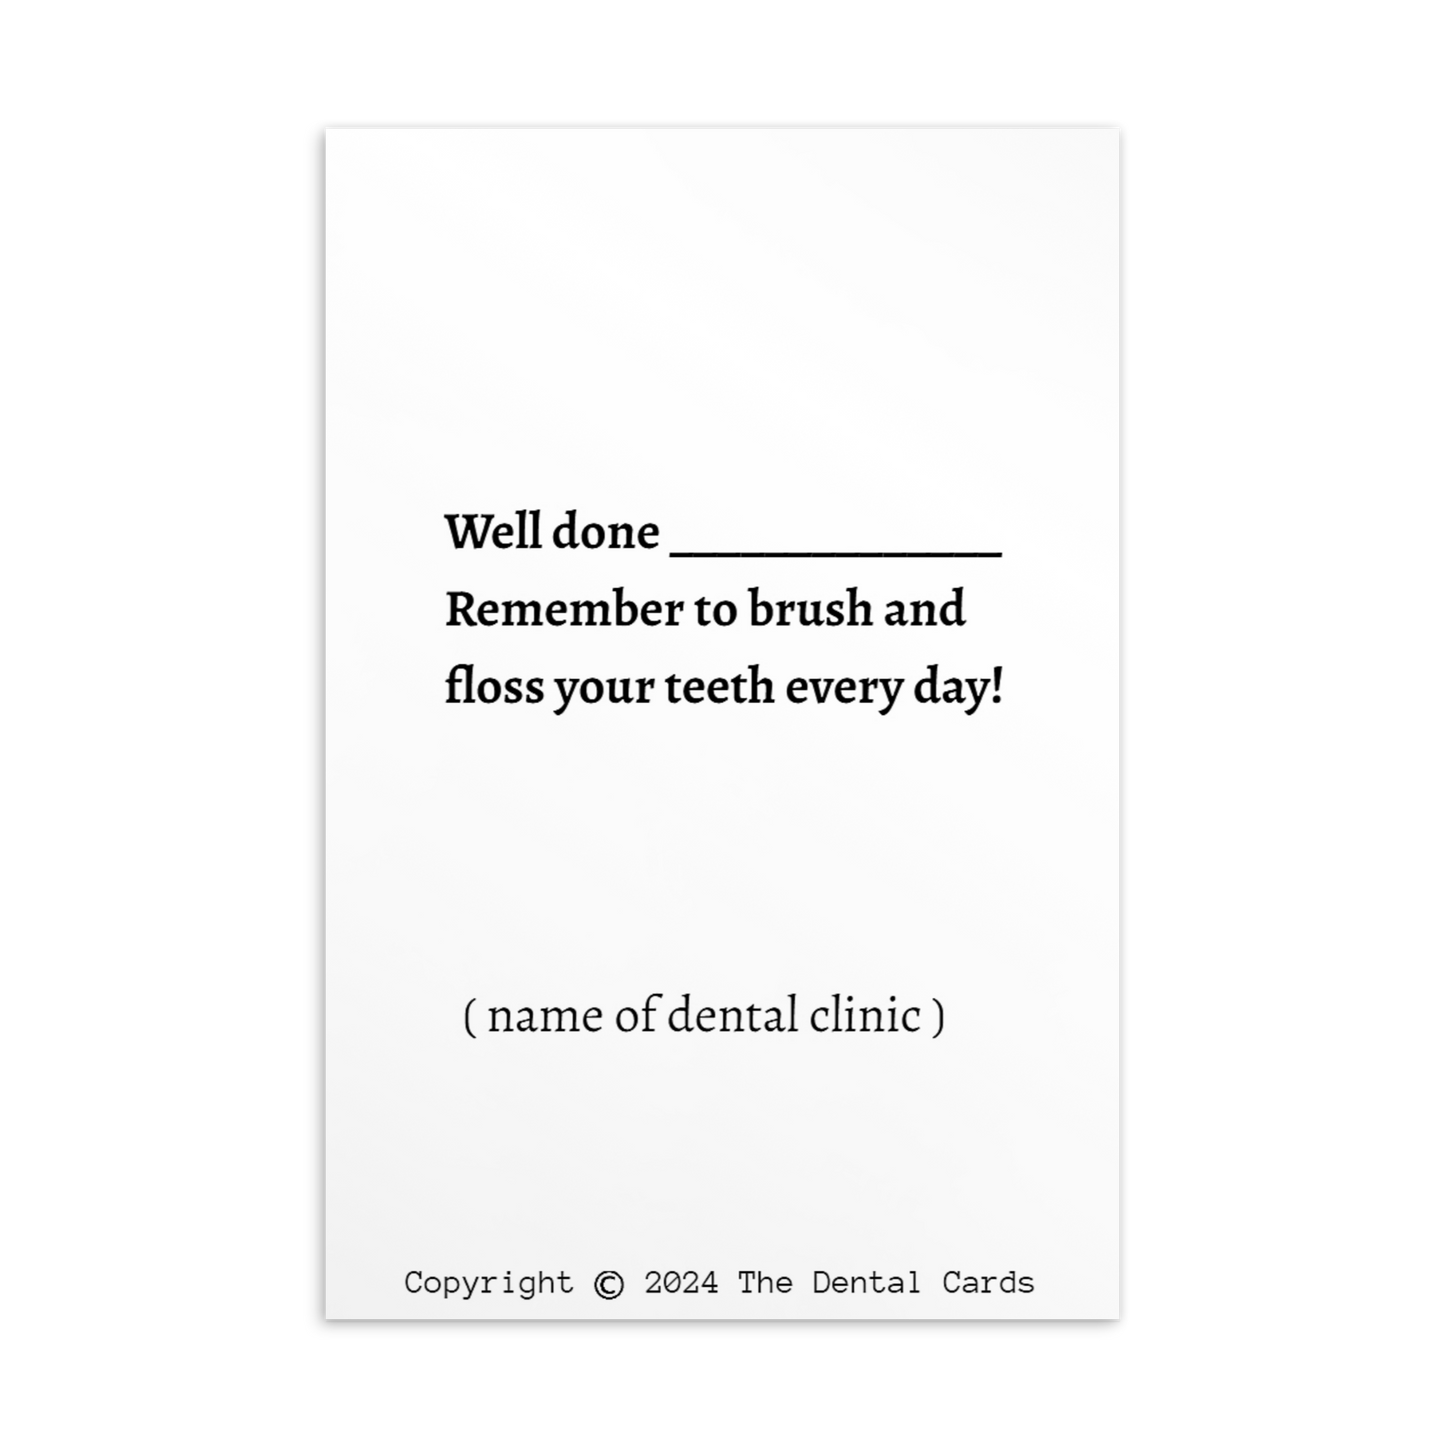 Dental Motivational & Reward Cards- I'm A Super Brusher!